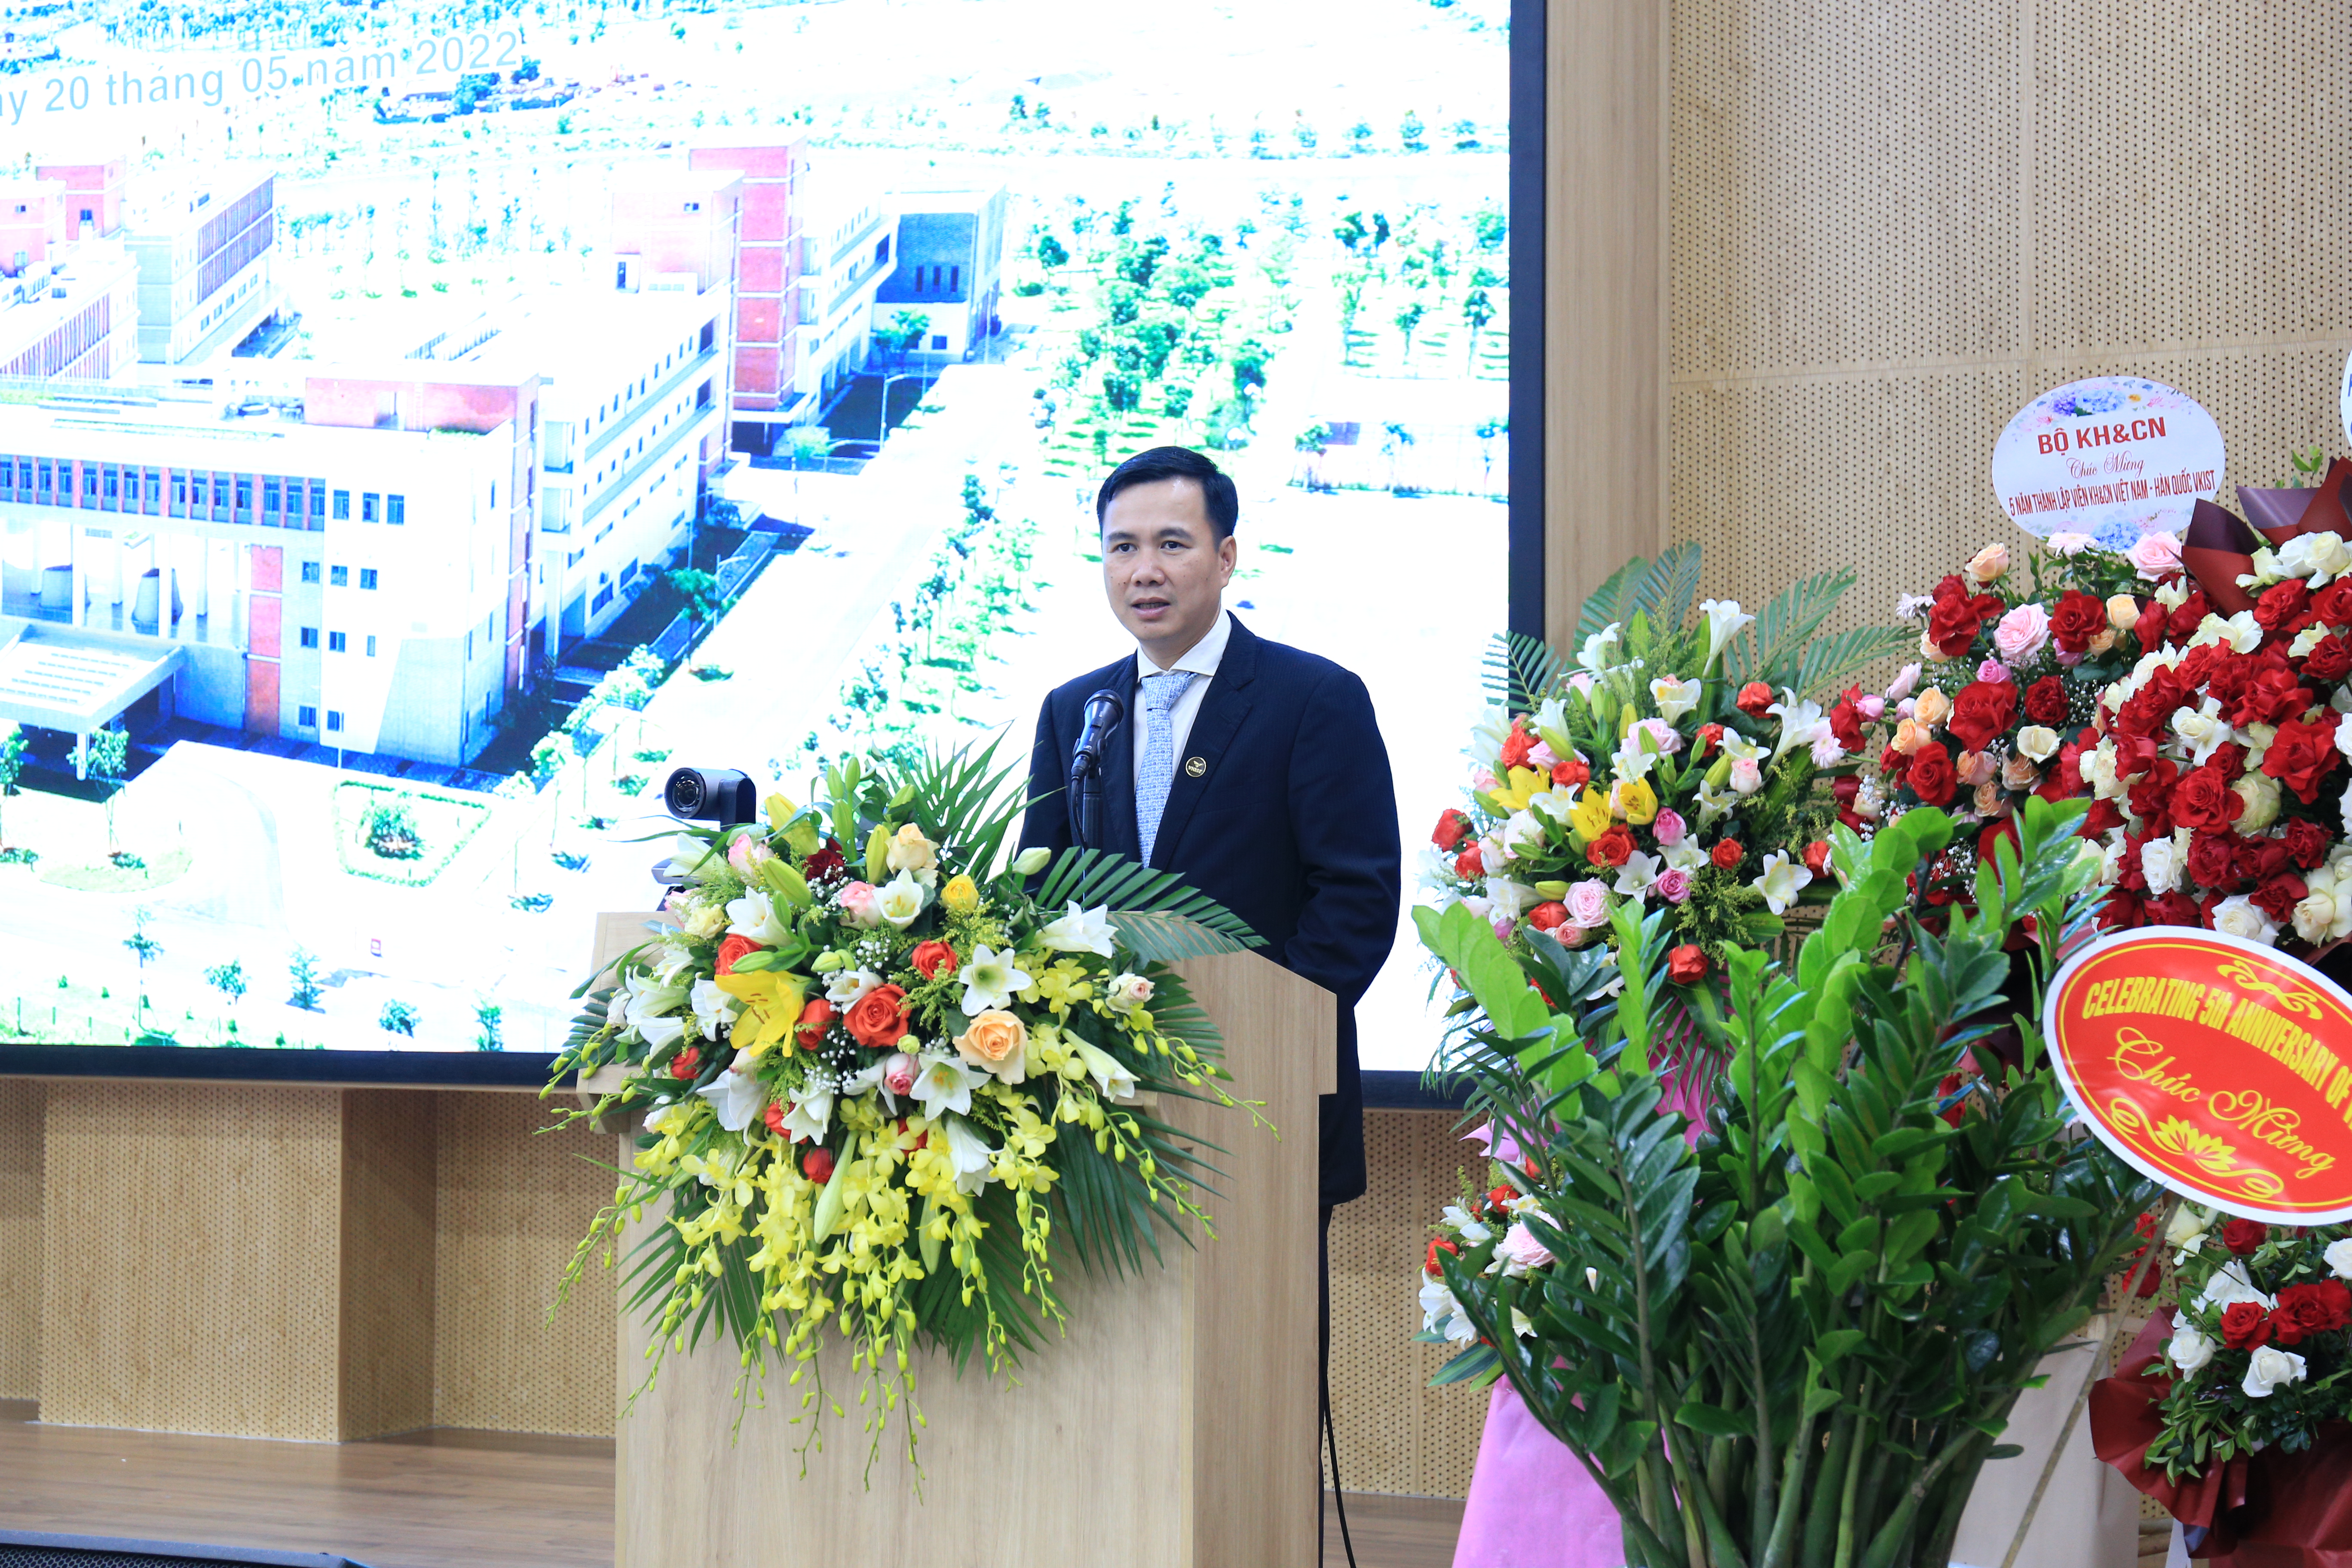 Thứ trưởng Bộ KH&CN Bùi Thế Duy phát biểu trong lễ kỷ niệm. Ảnh: TA